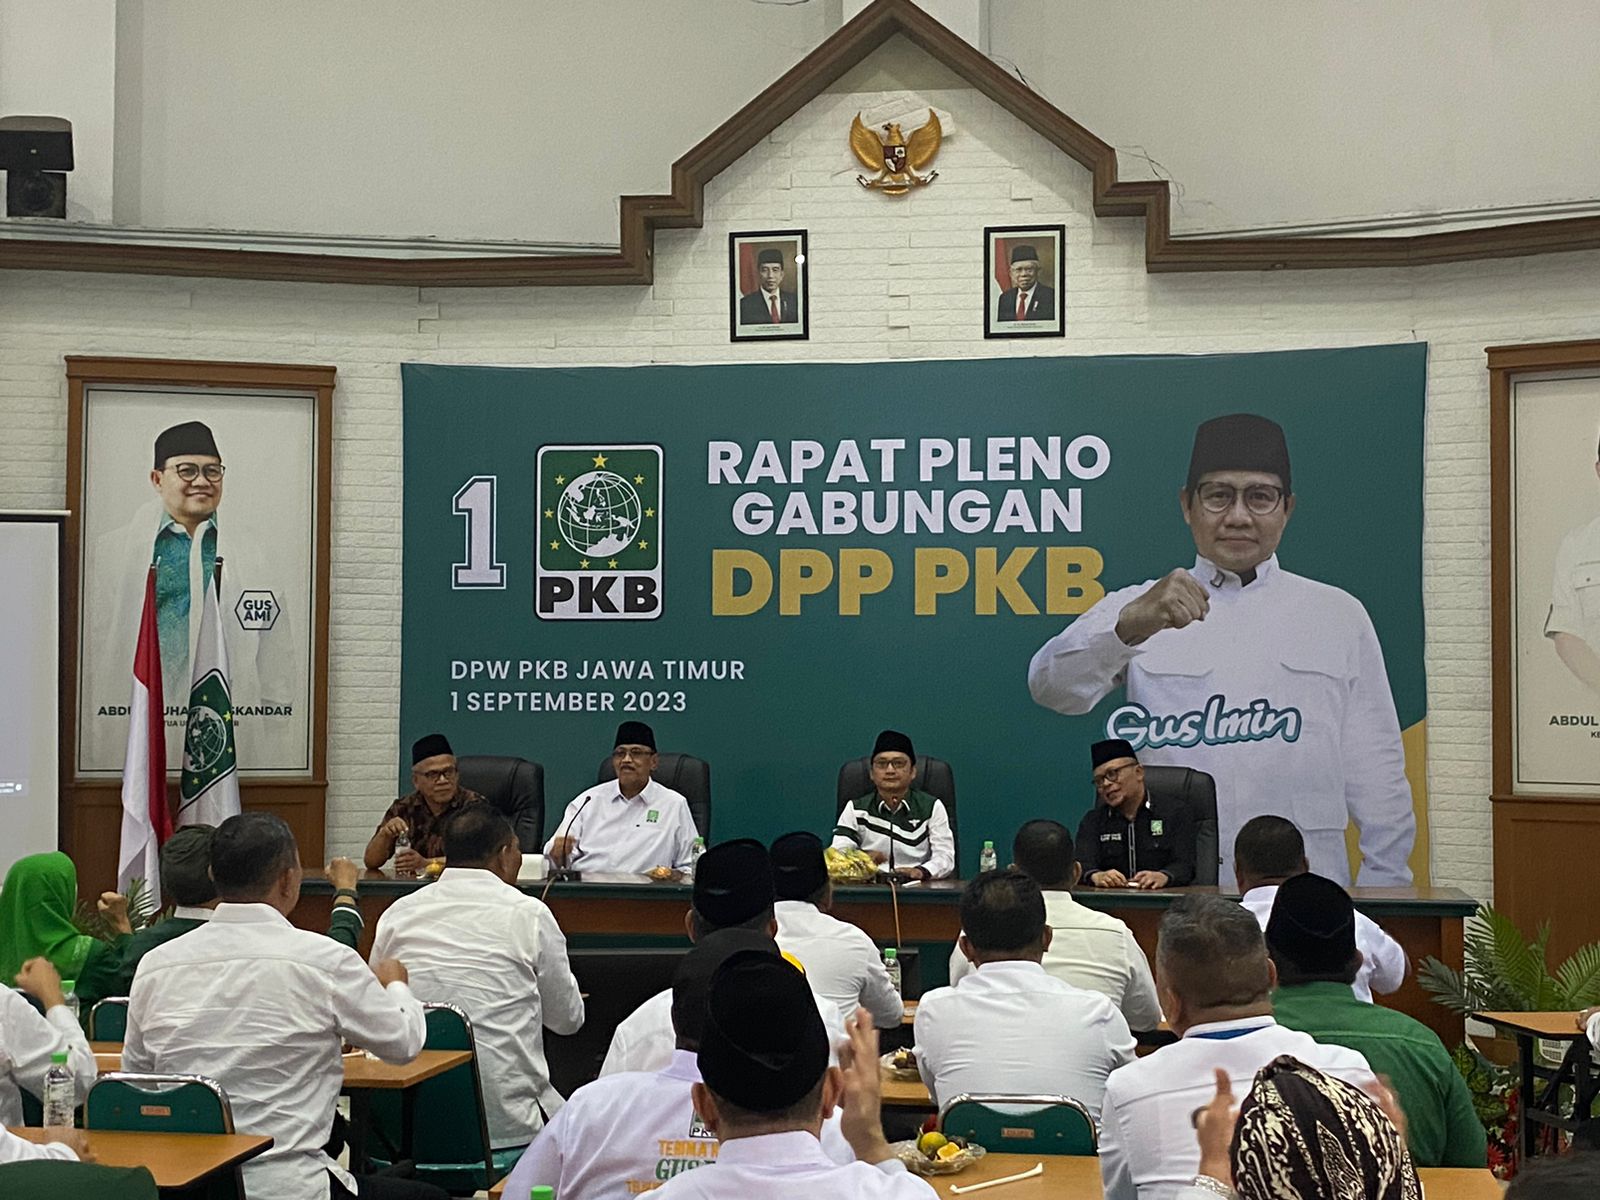 Suasana sebelum dimulainya Rapat Pleno Gabungan DPP PKB di Kantor DPW PKB Jatim, Jumat (1/9/2023). Foto: Wildan suarasurabaya.net